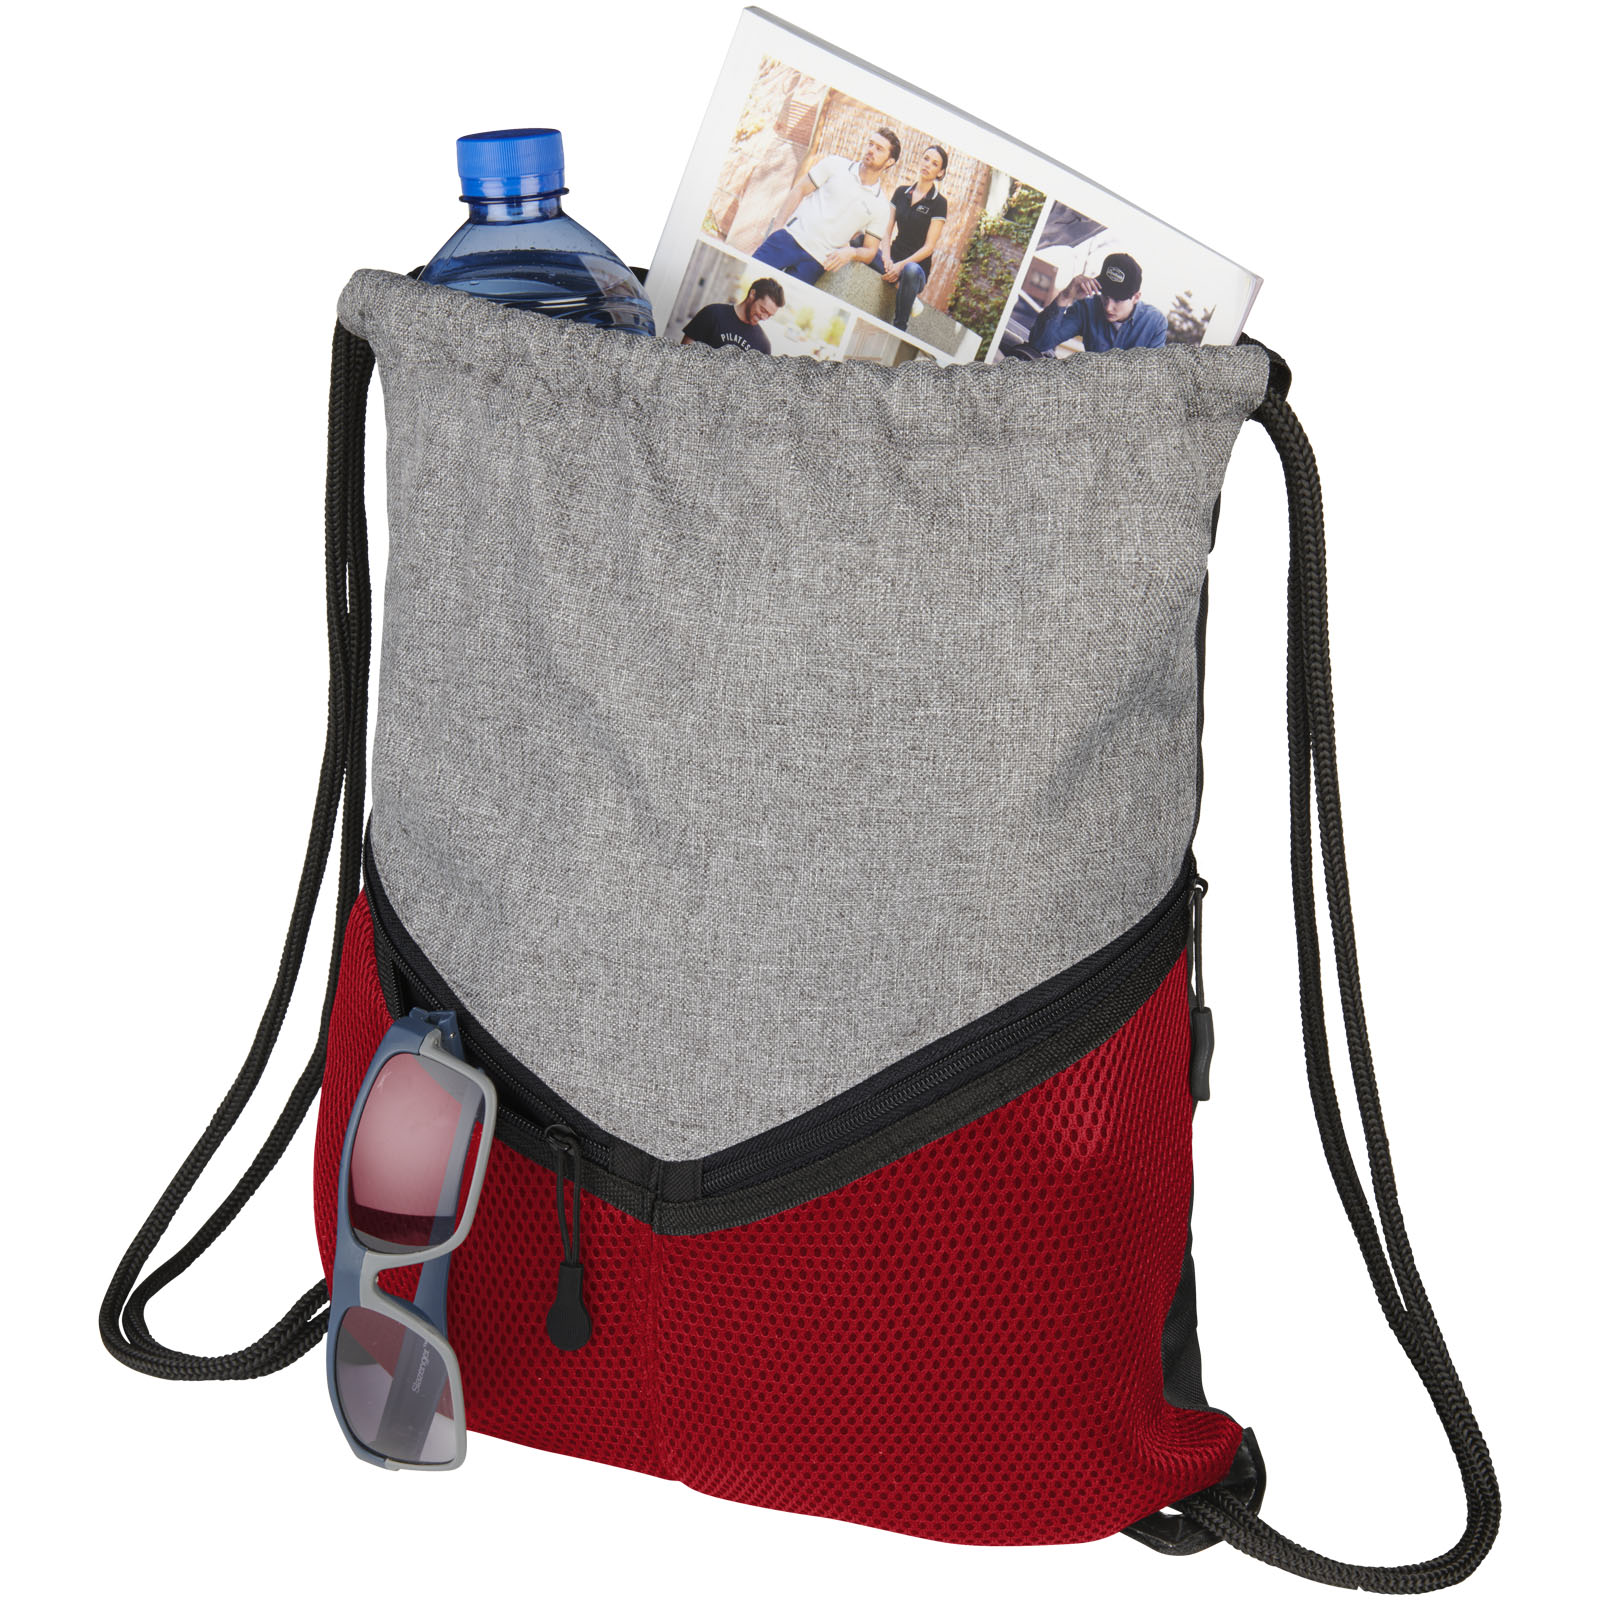 Advertising Drawstring Bags - Voyager drawstring bag 6L - 0